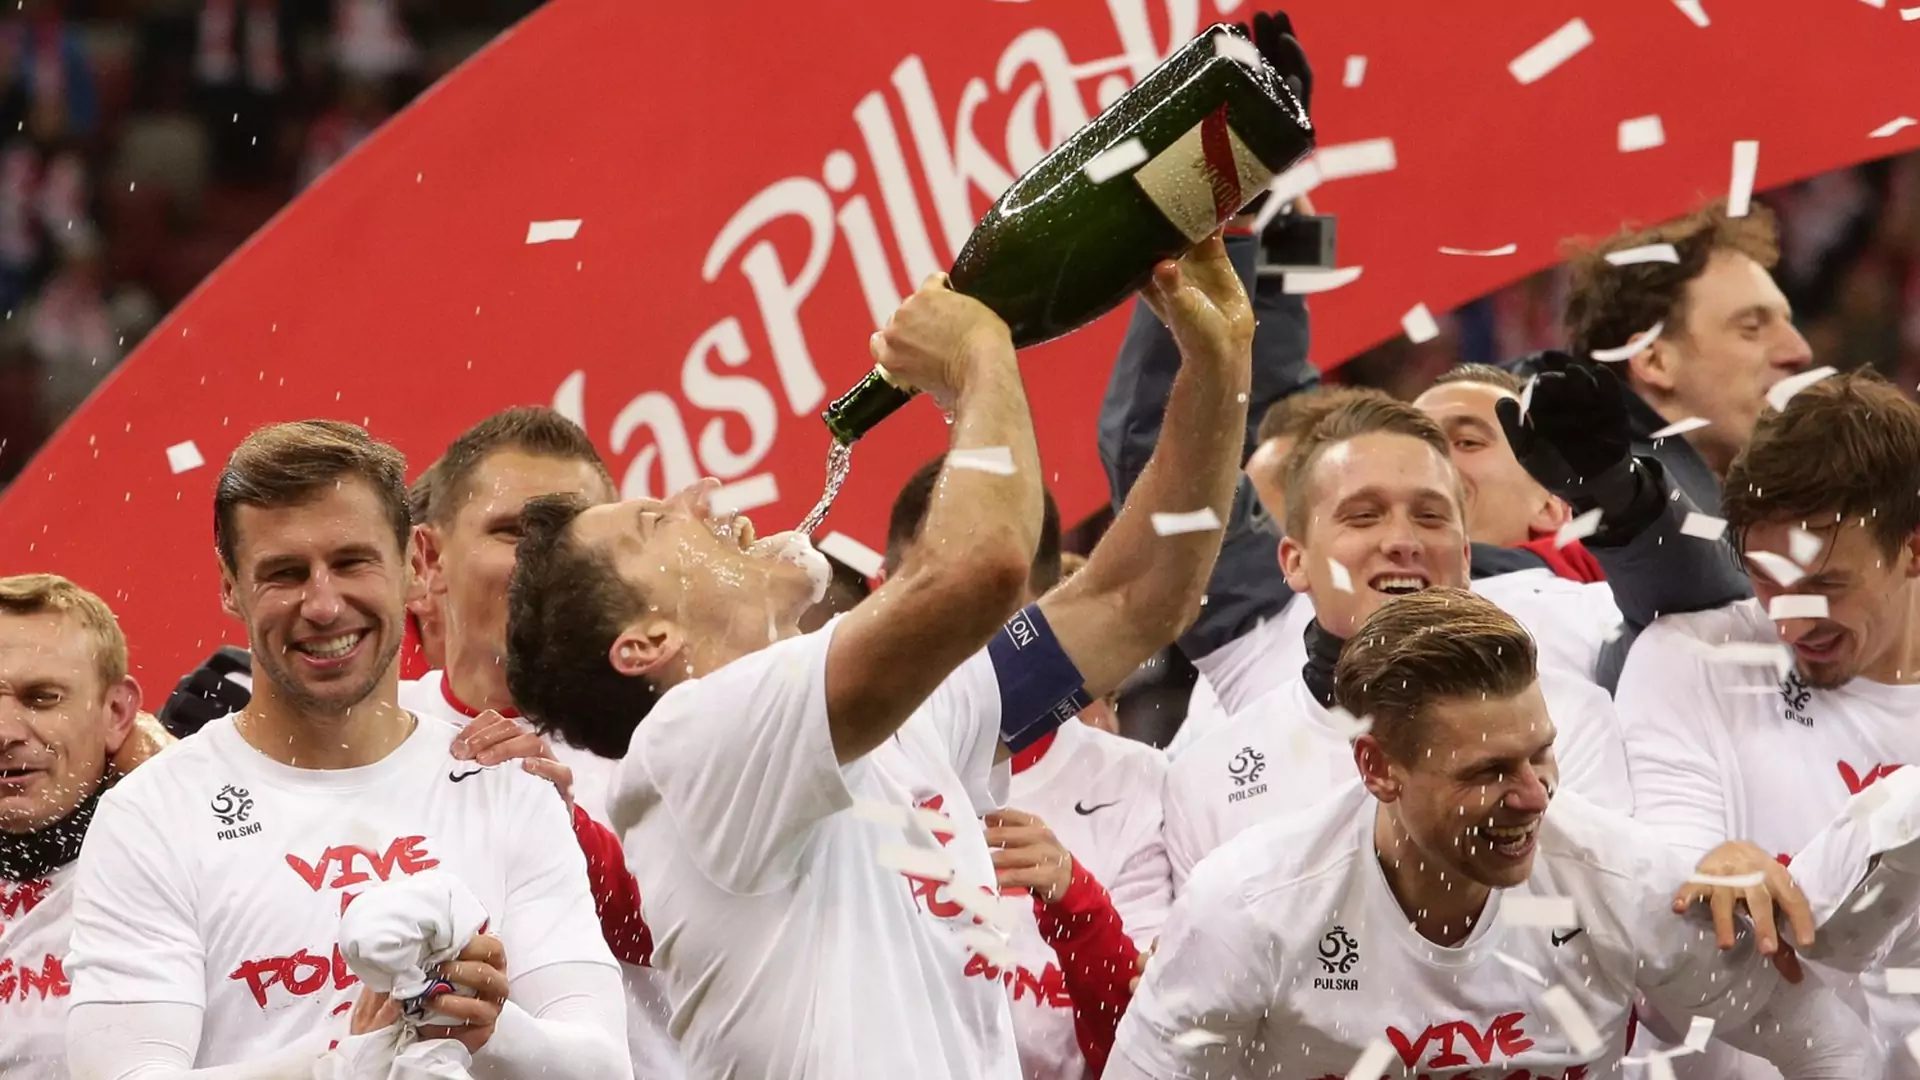 Wygrana Polski w meczach towarzyskich wcale nie jest taka dobra? Oto, co powinno się stać